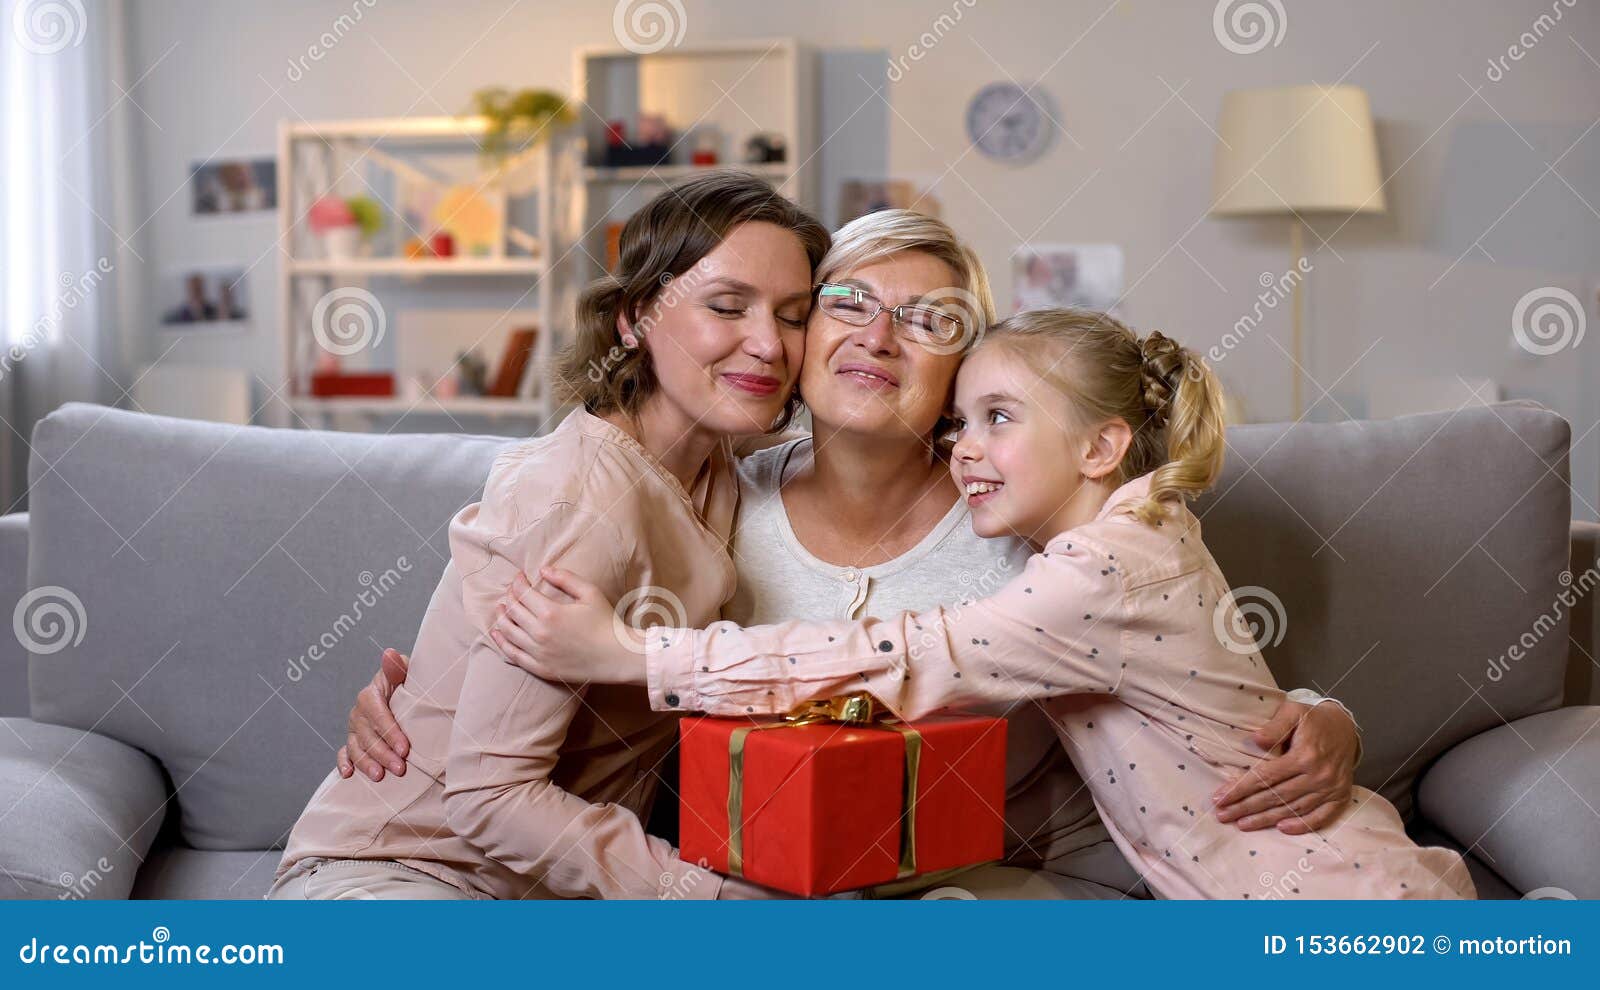 Lesbian Granny Pics